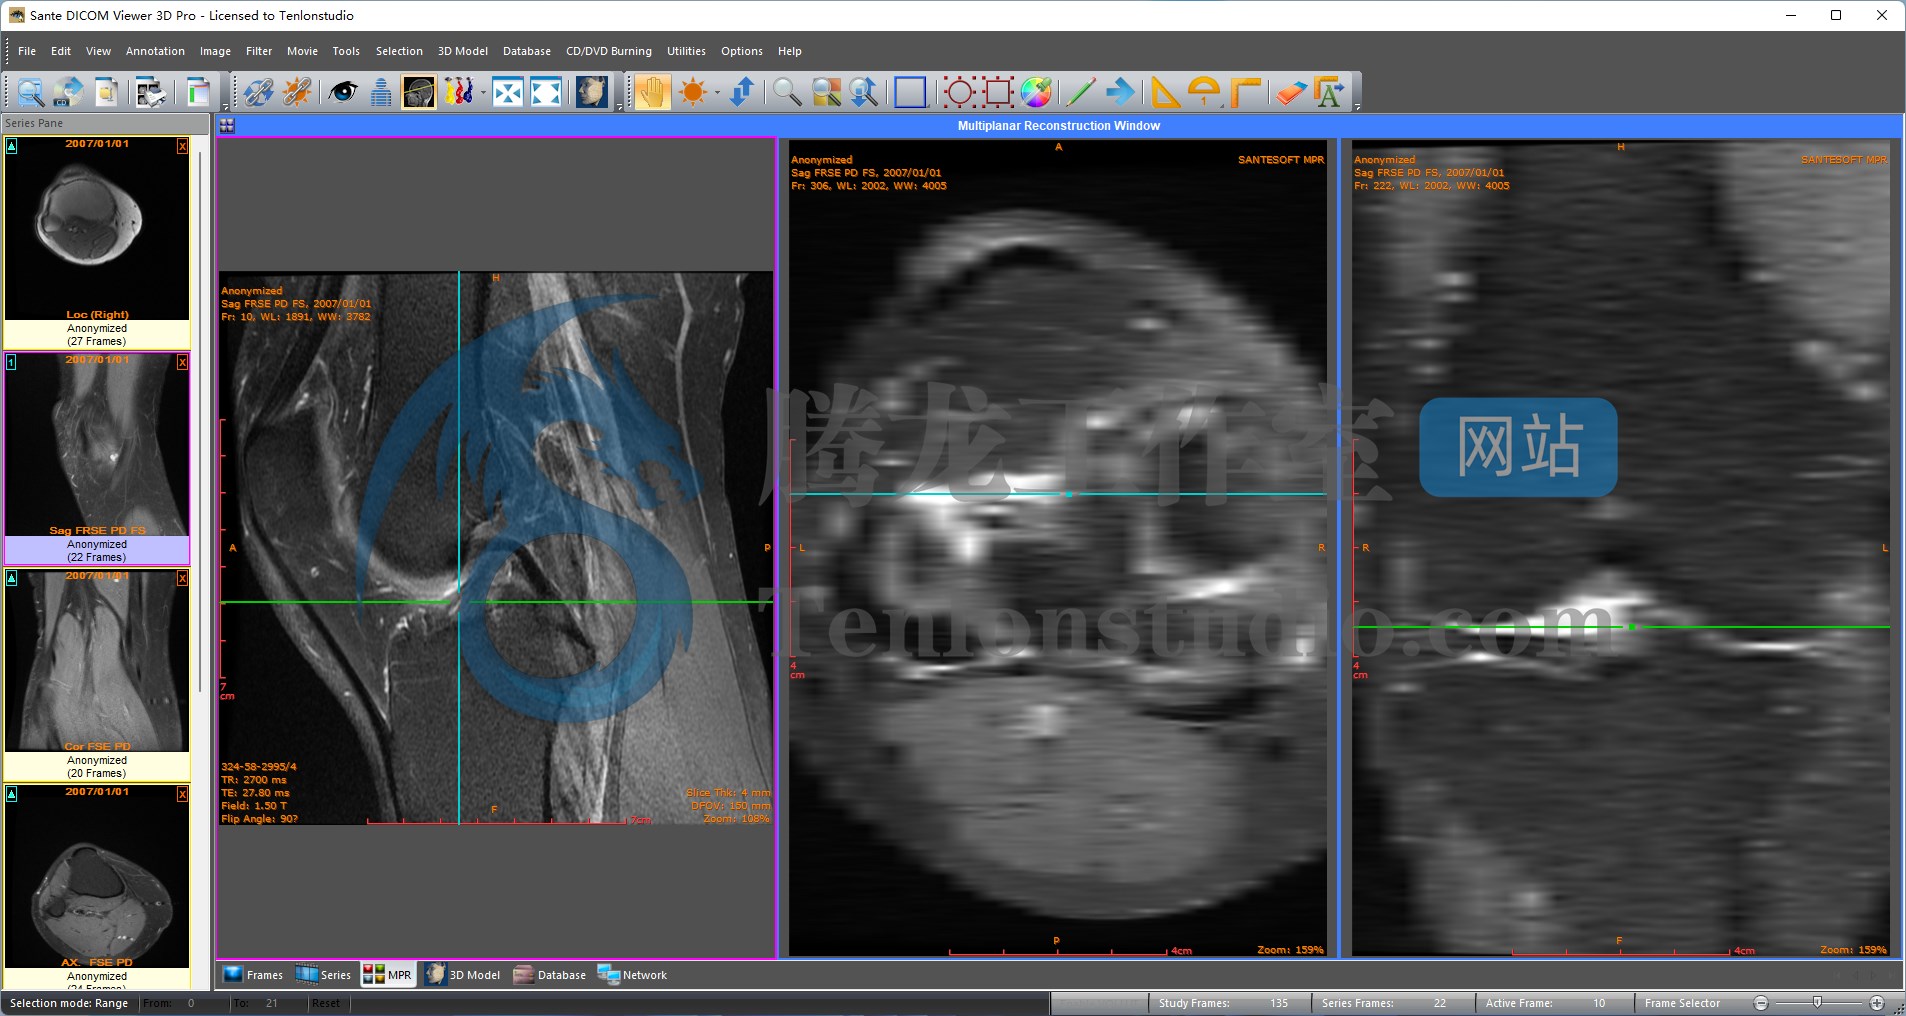 DICOM医学影像浏览器 Sante DICOM Viewer 3D Pro v4.9.4 破解版插图